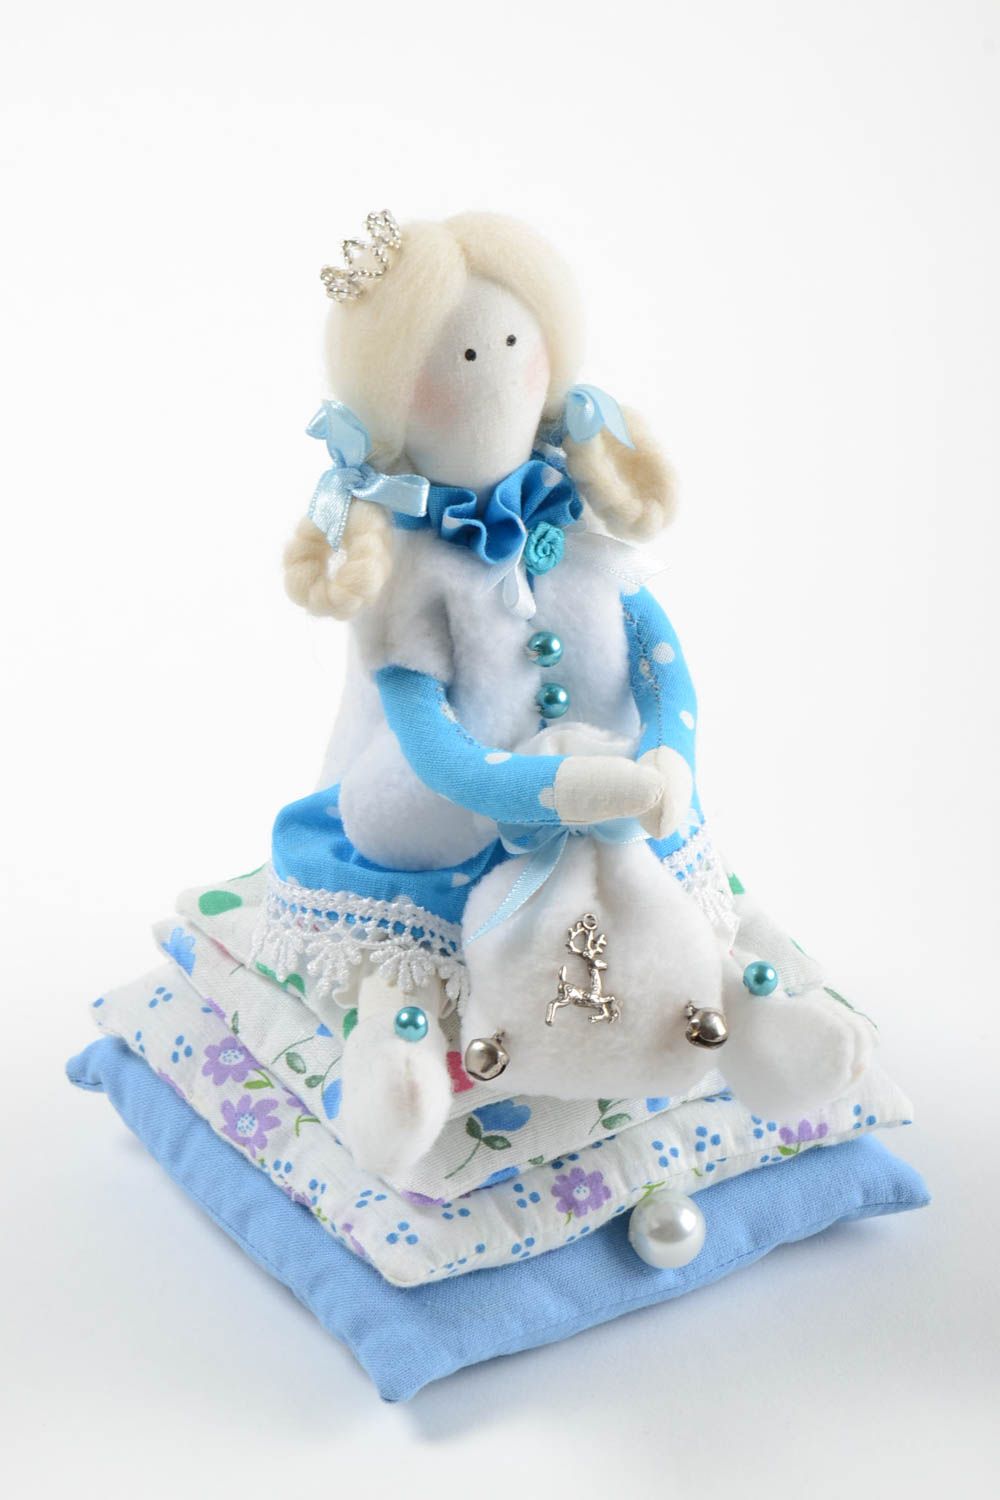 Интерьерная игрушка из хлопка мягкая авторская ручной работы Принцесса с мешком фото 2